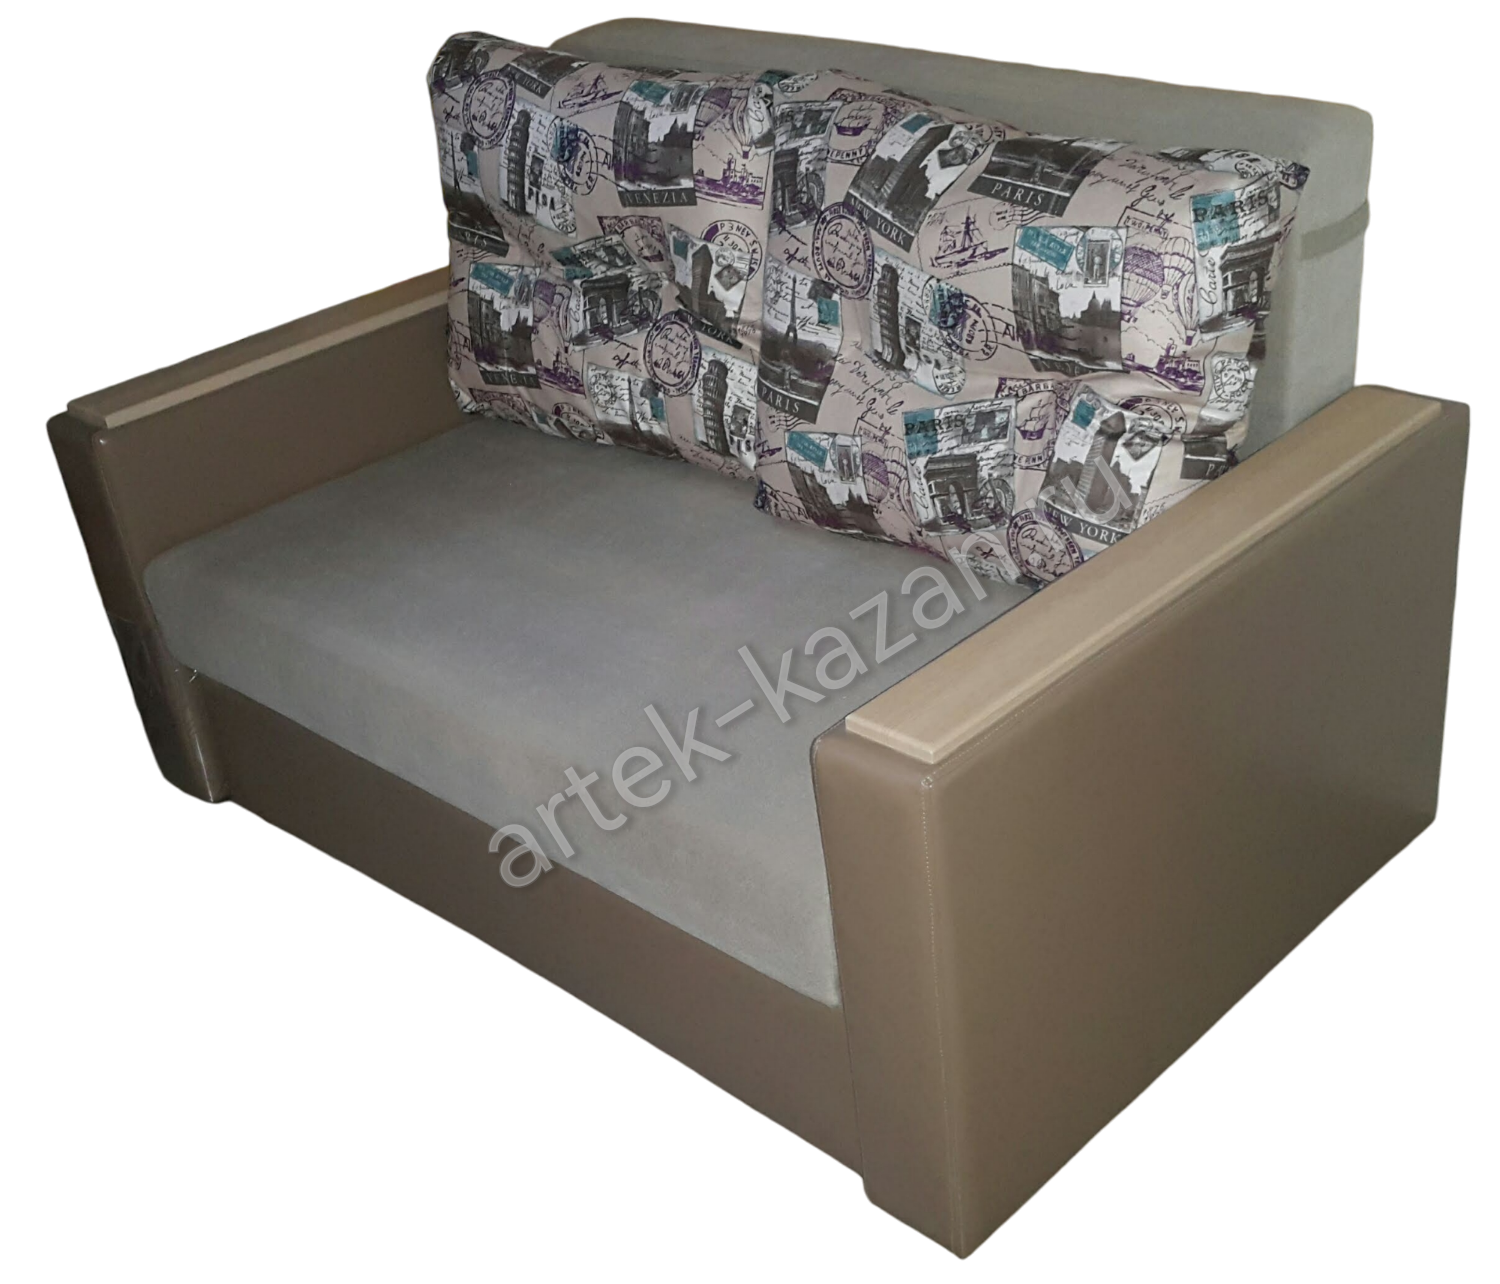 Мини диван на выкатном механизме Миник фото № 30. Купить недорогой диван по низкой цене от производителя можно у нас.